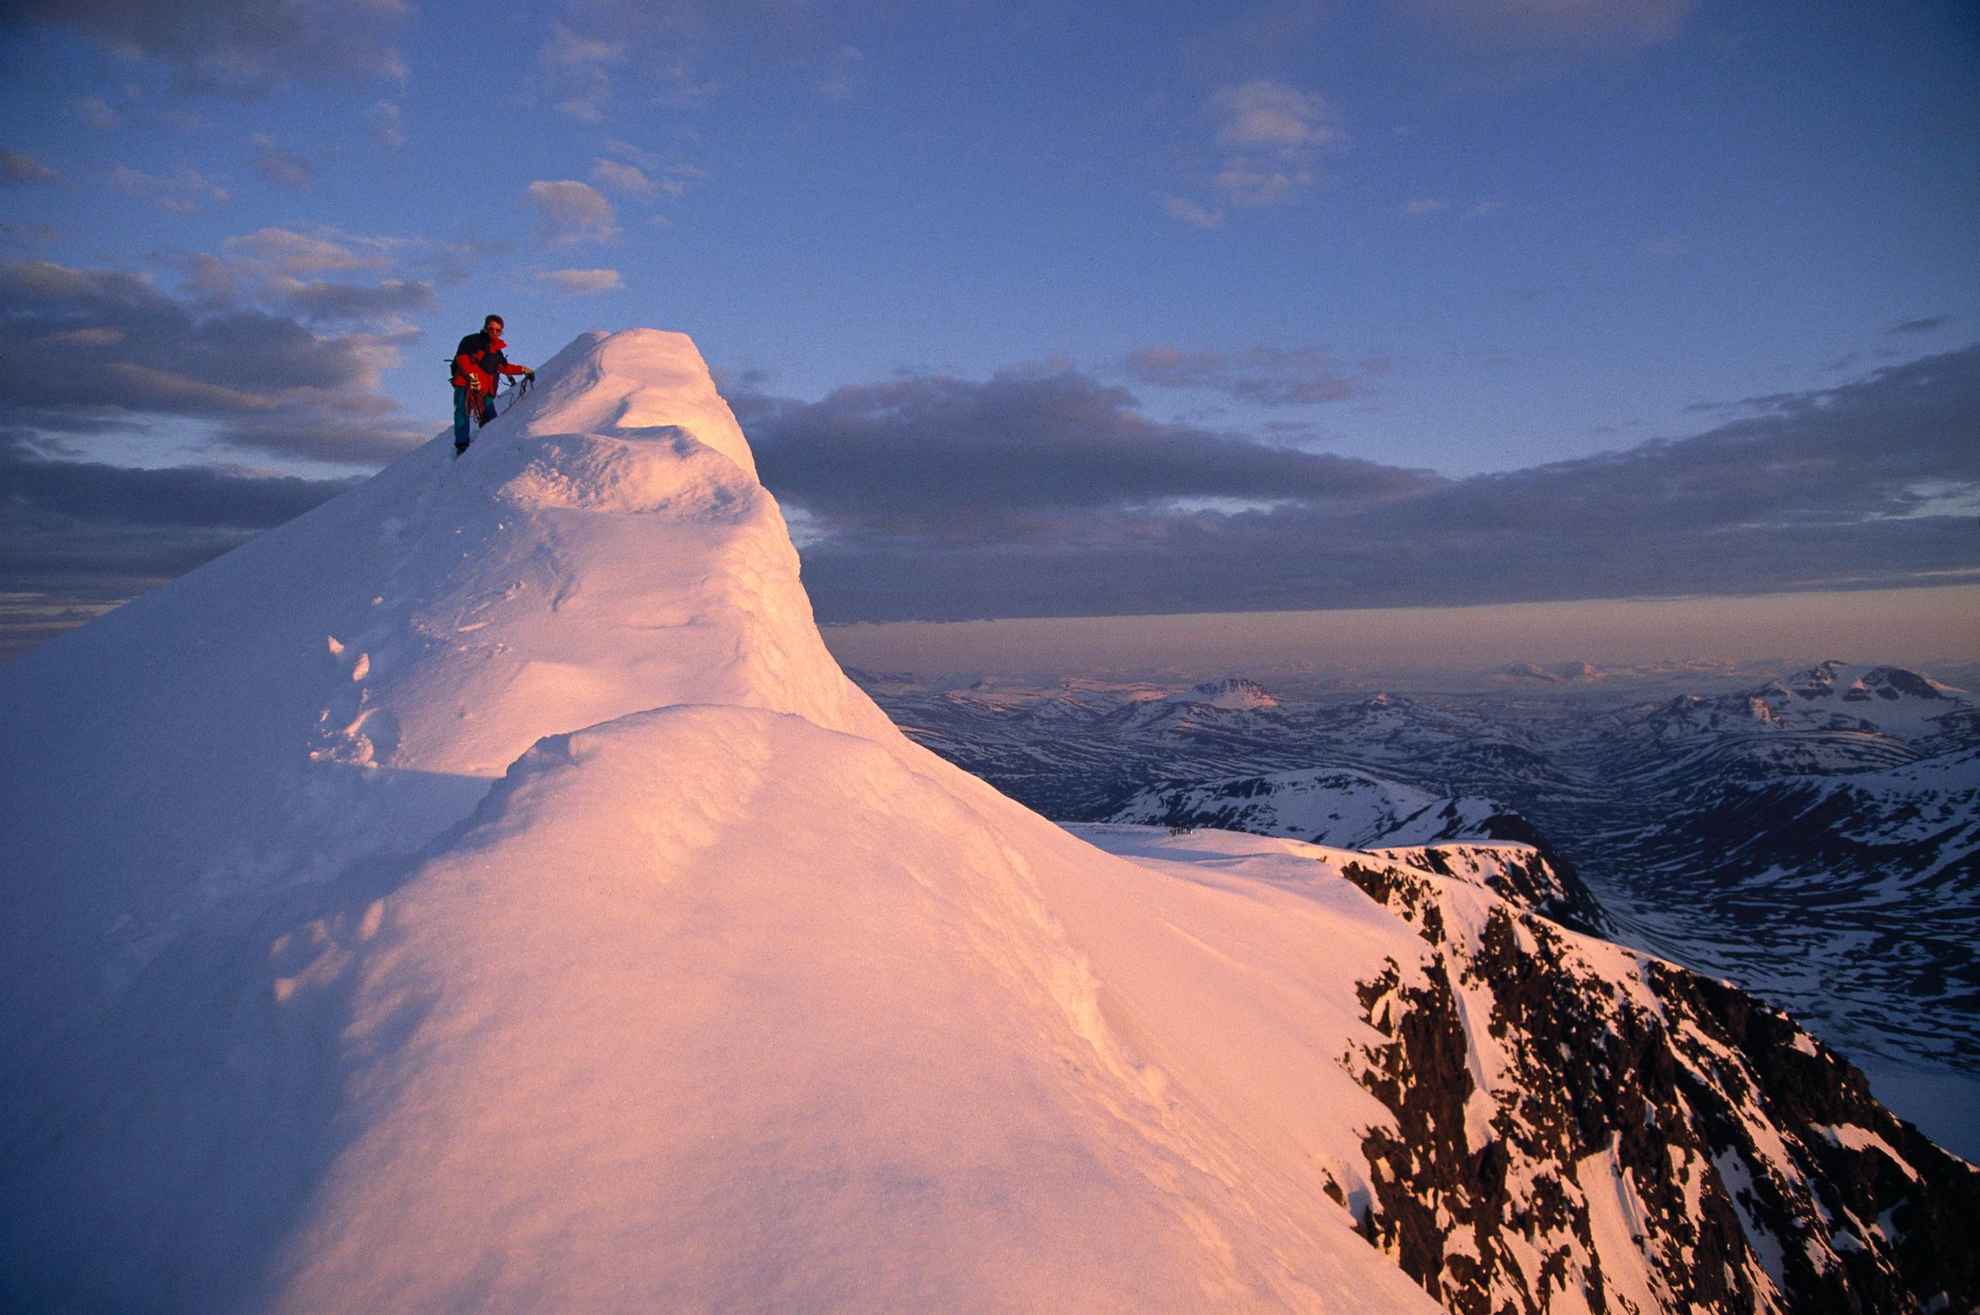 Une personne se tient debout au sommet d'une montagne enneigée.